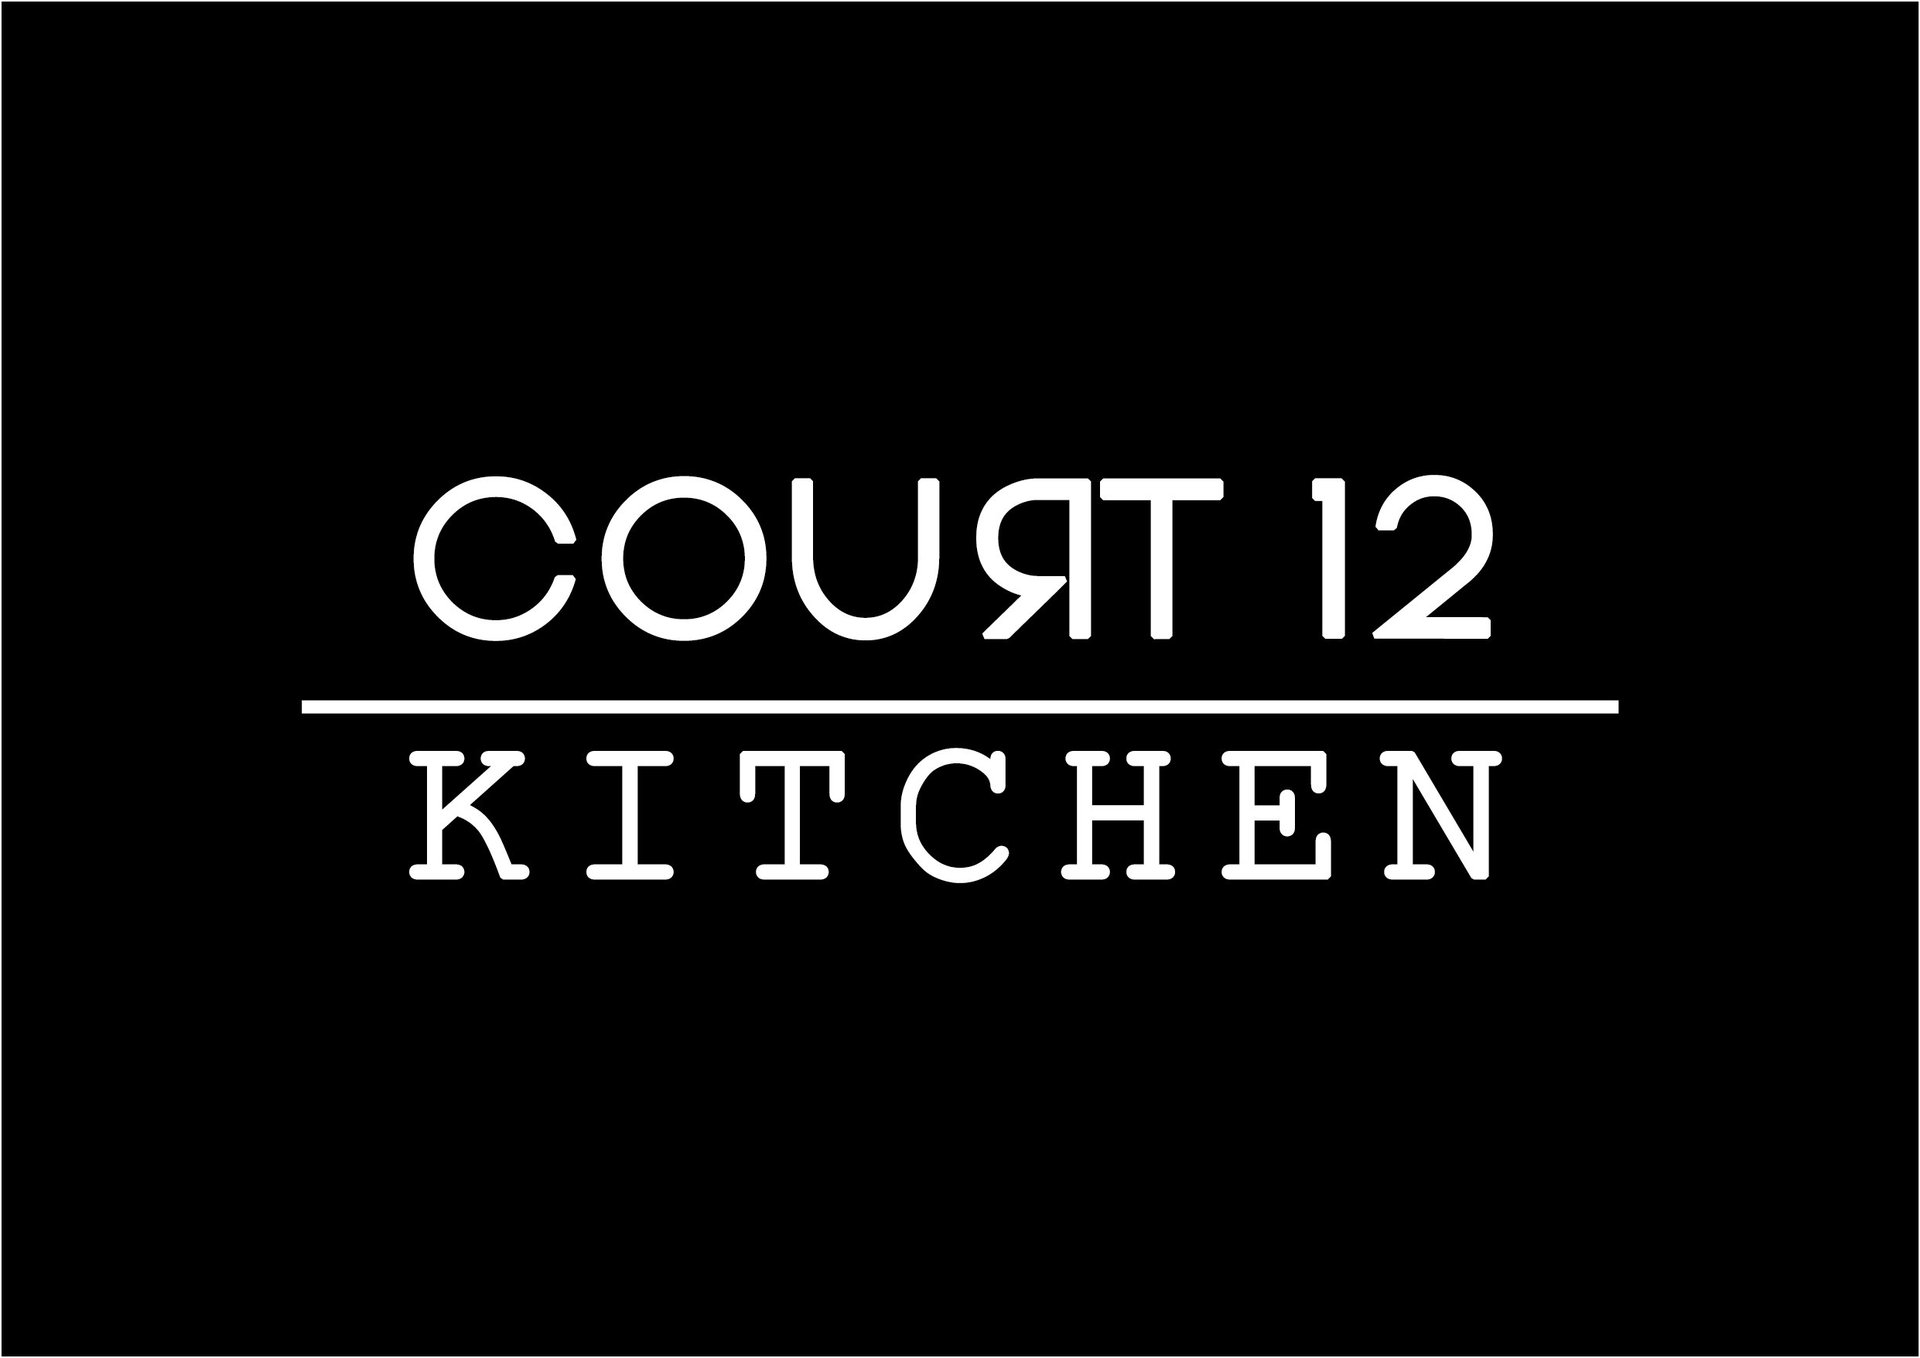 Court 12 Kitchen